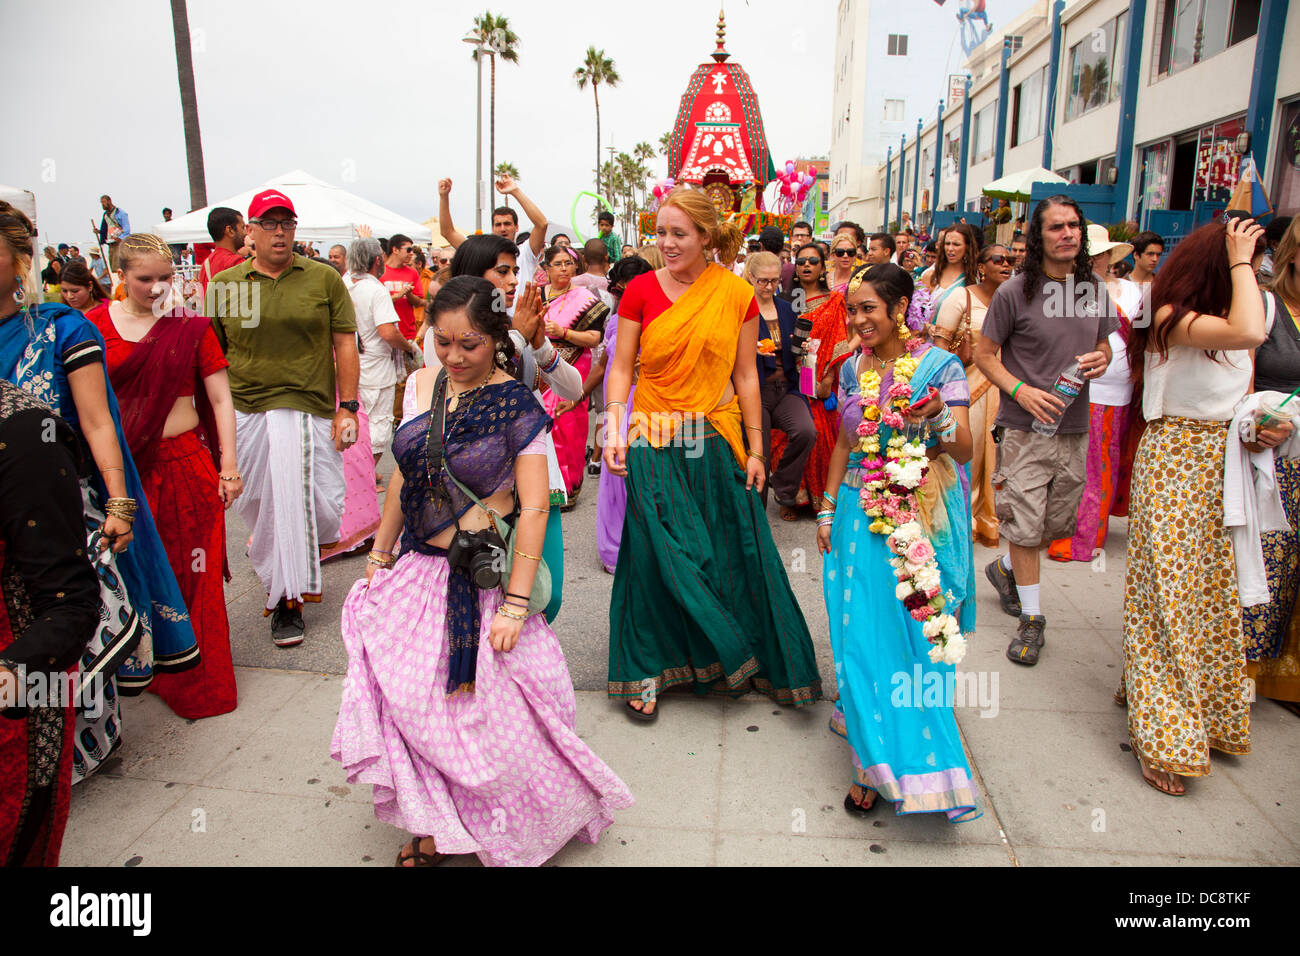 Eaton, de Hare Krishna Festival - 4 août 2013 - Venice Beach, Los Angeles, Californie, États-Unis d'Amérique Banque D'Images